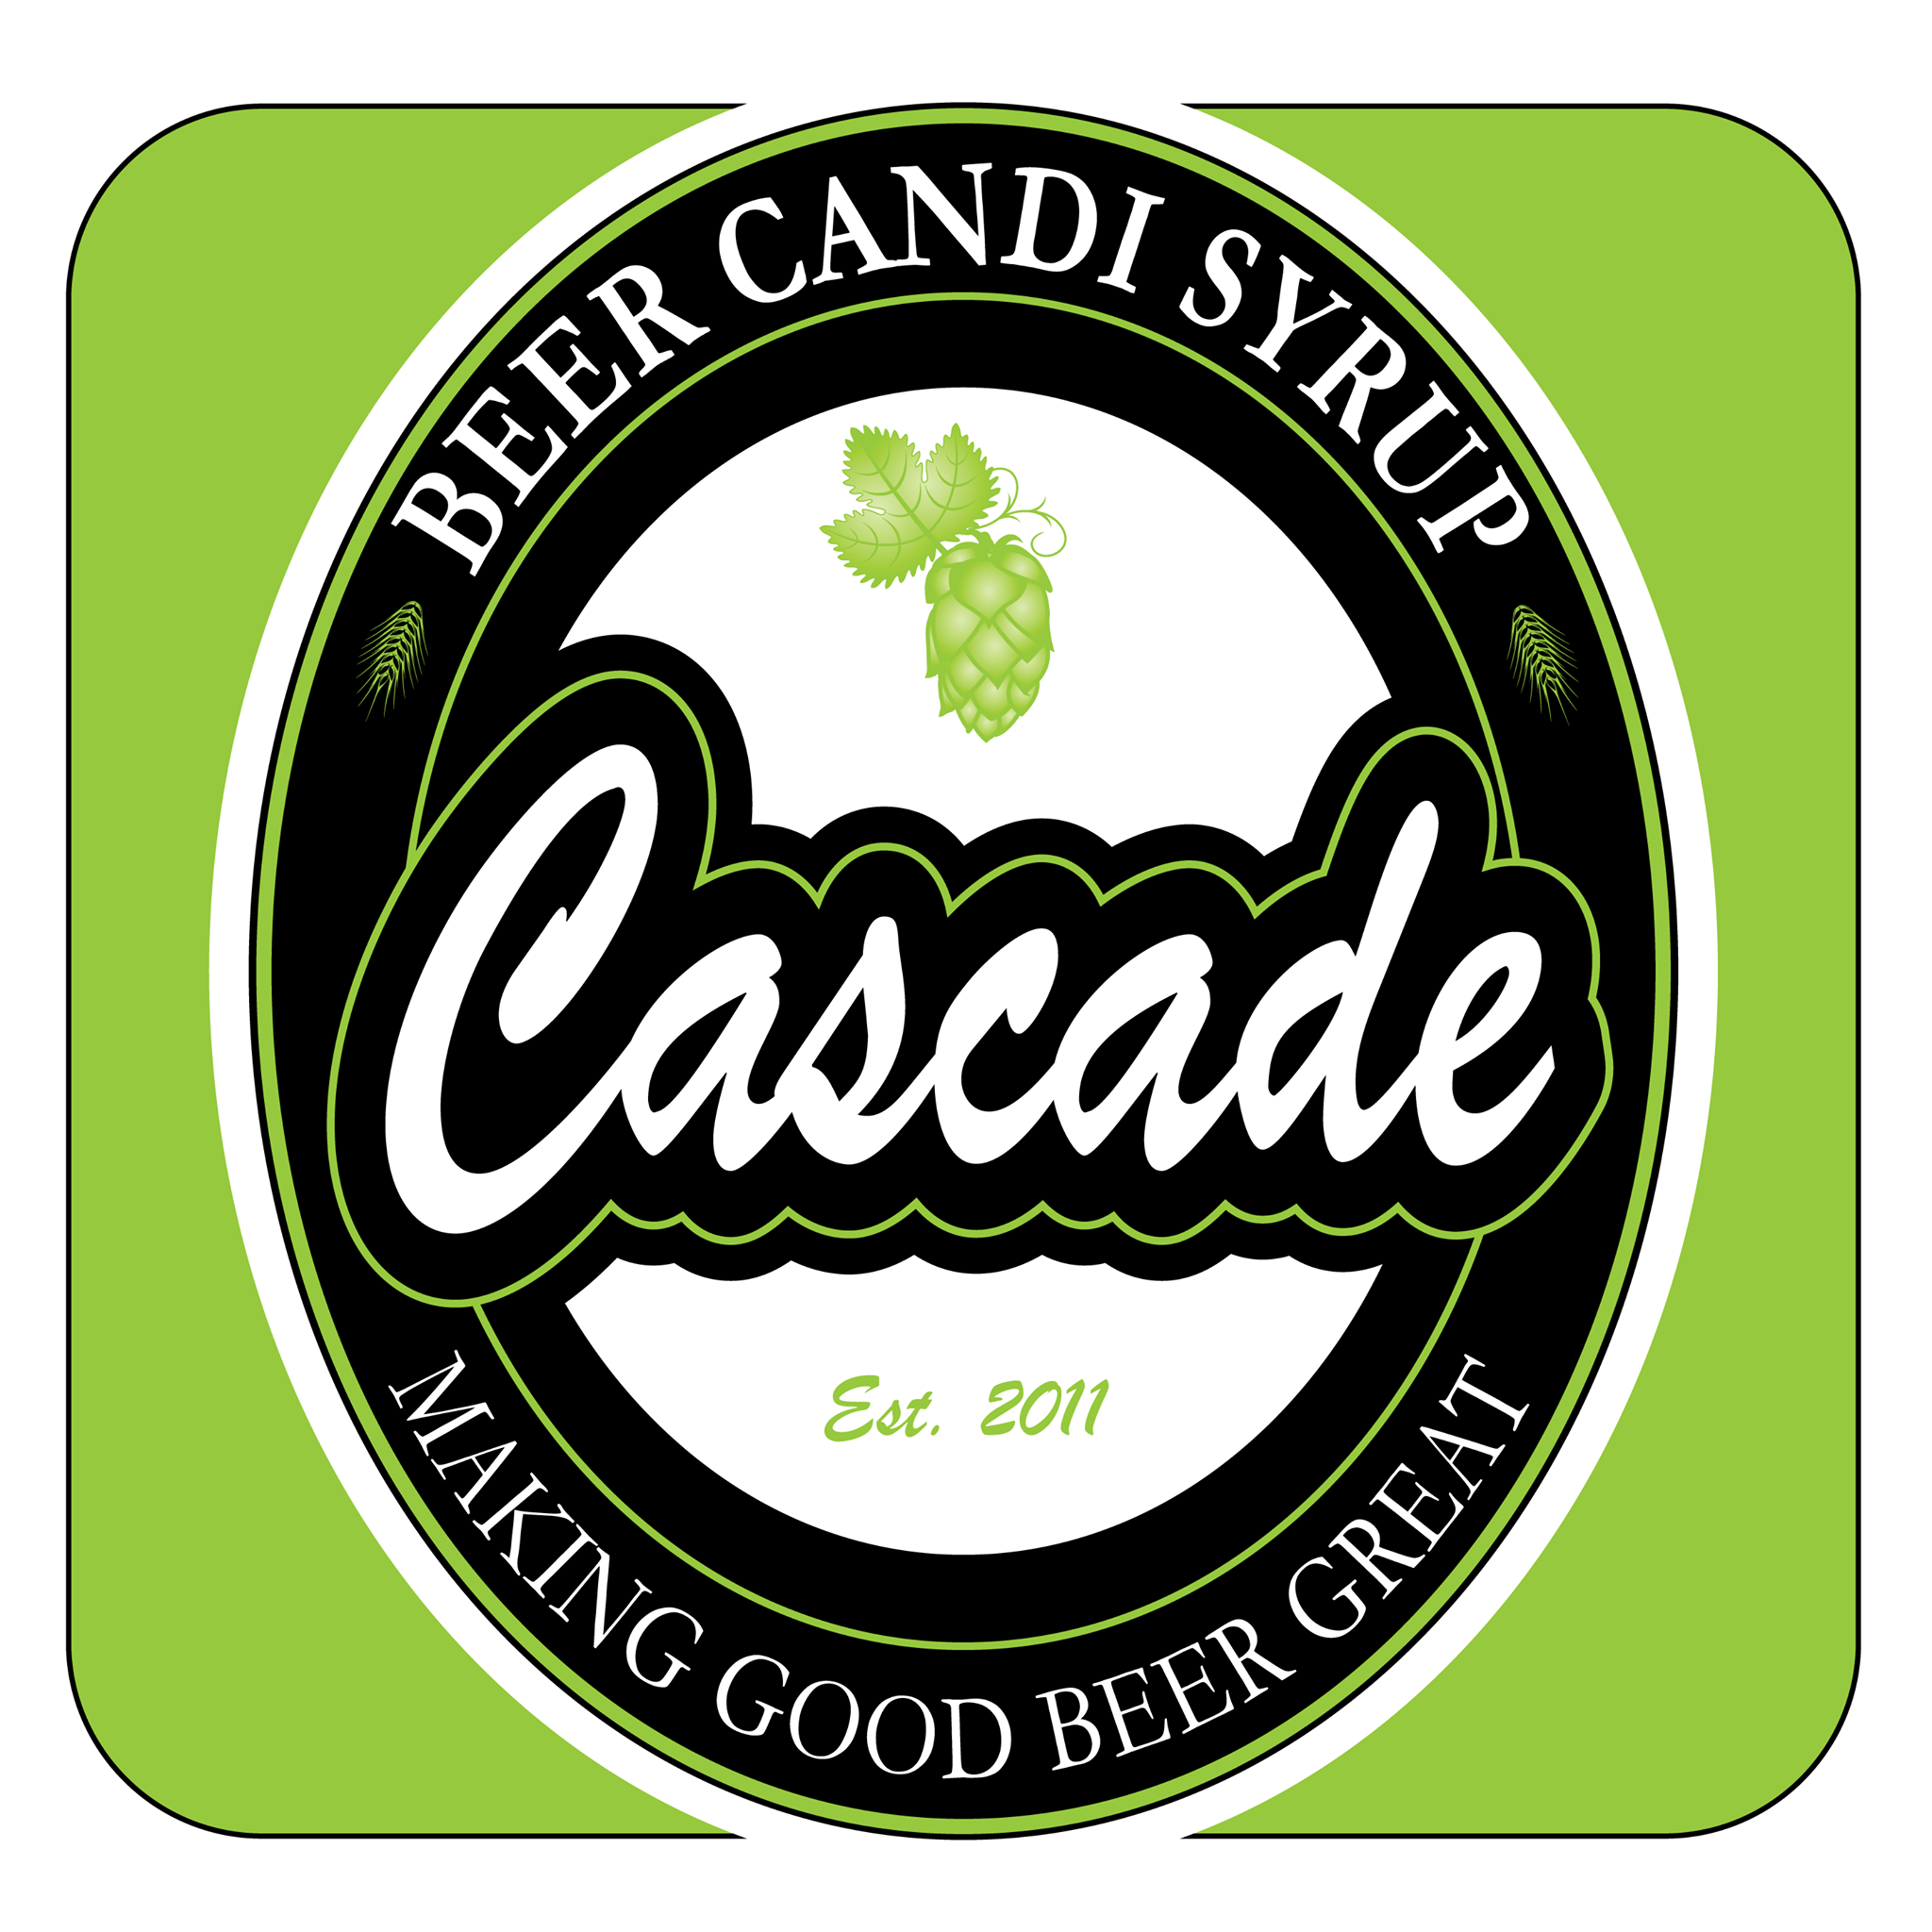 Cascade Beer Candi Company